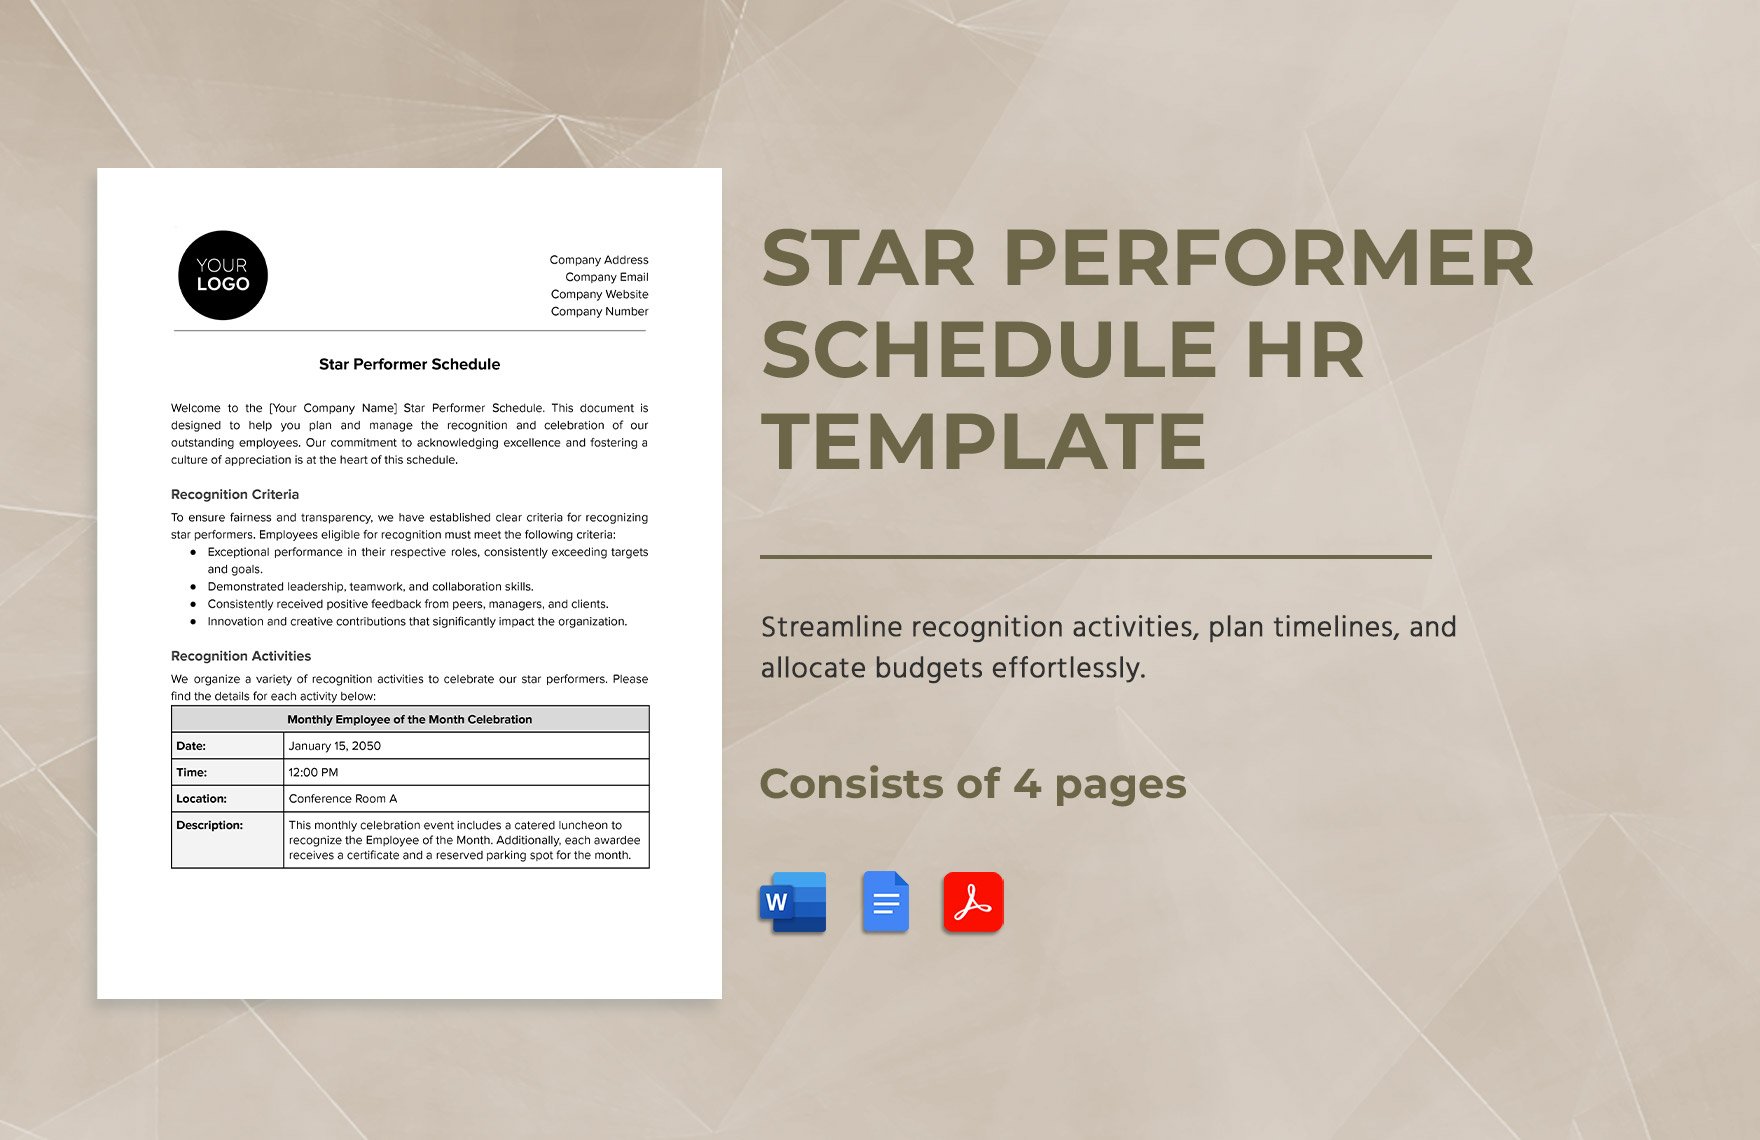 Star Performer Schedule HR Template